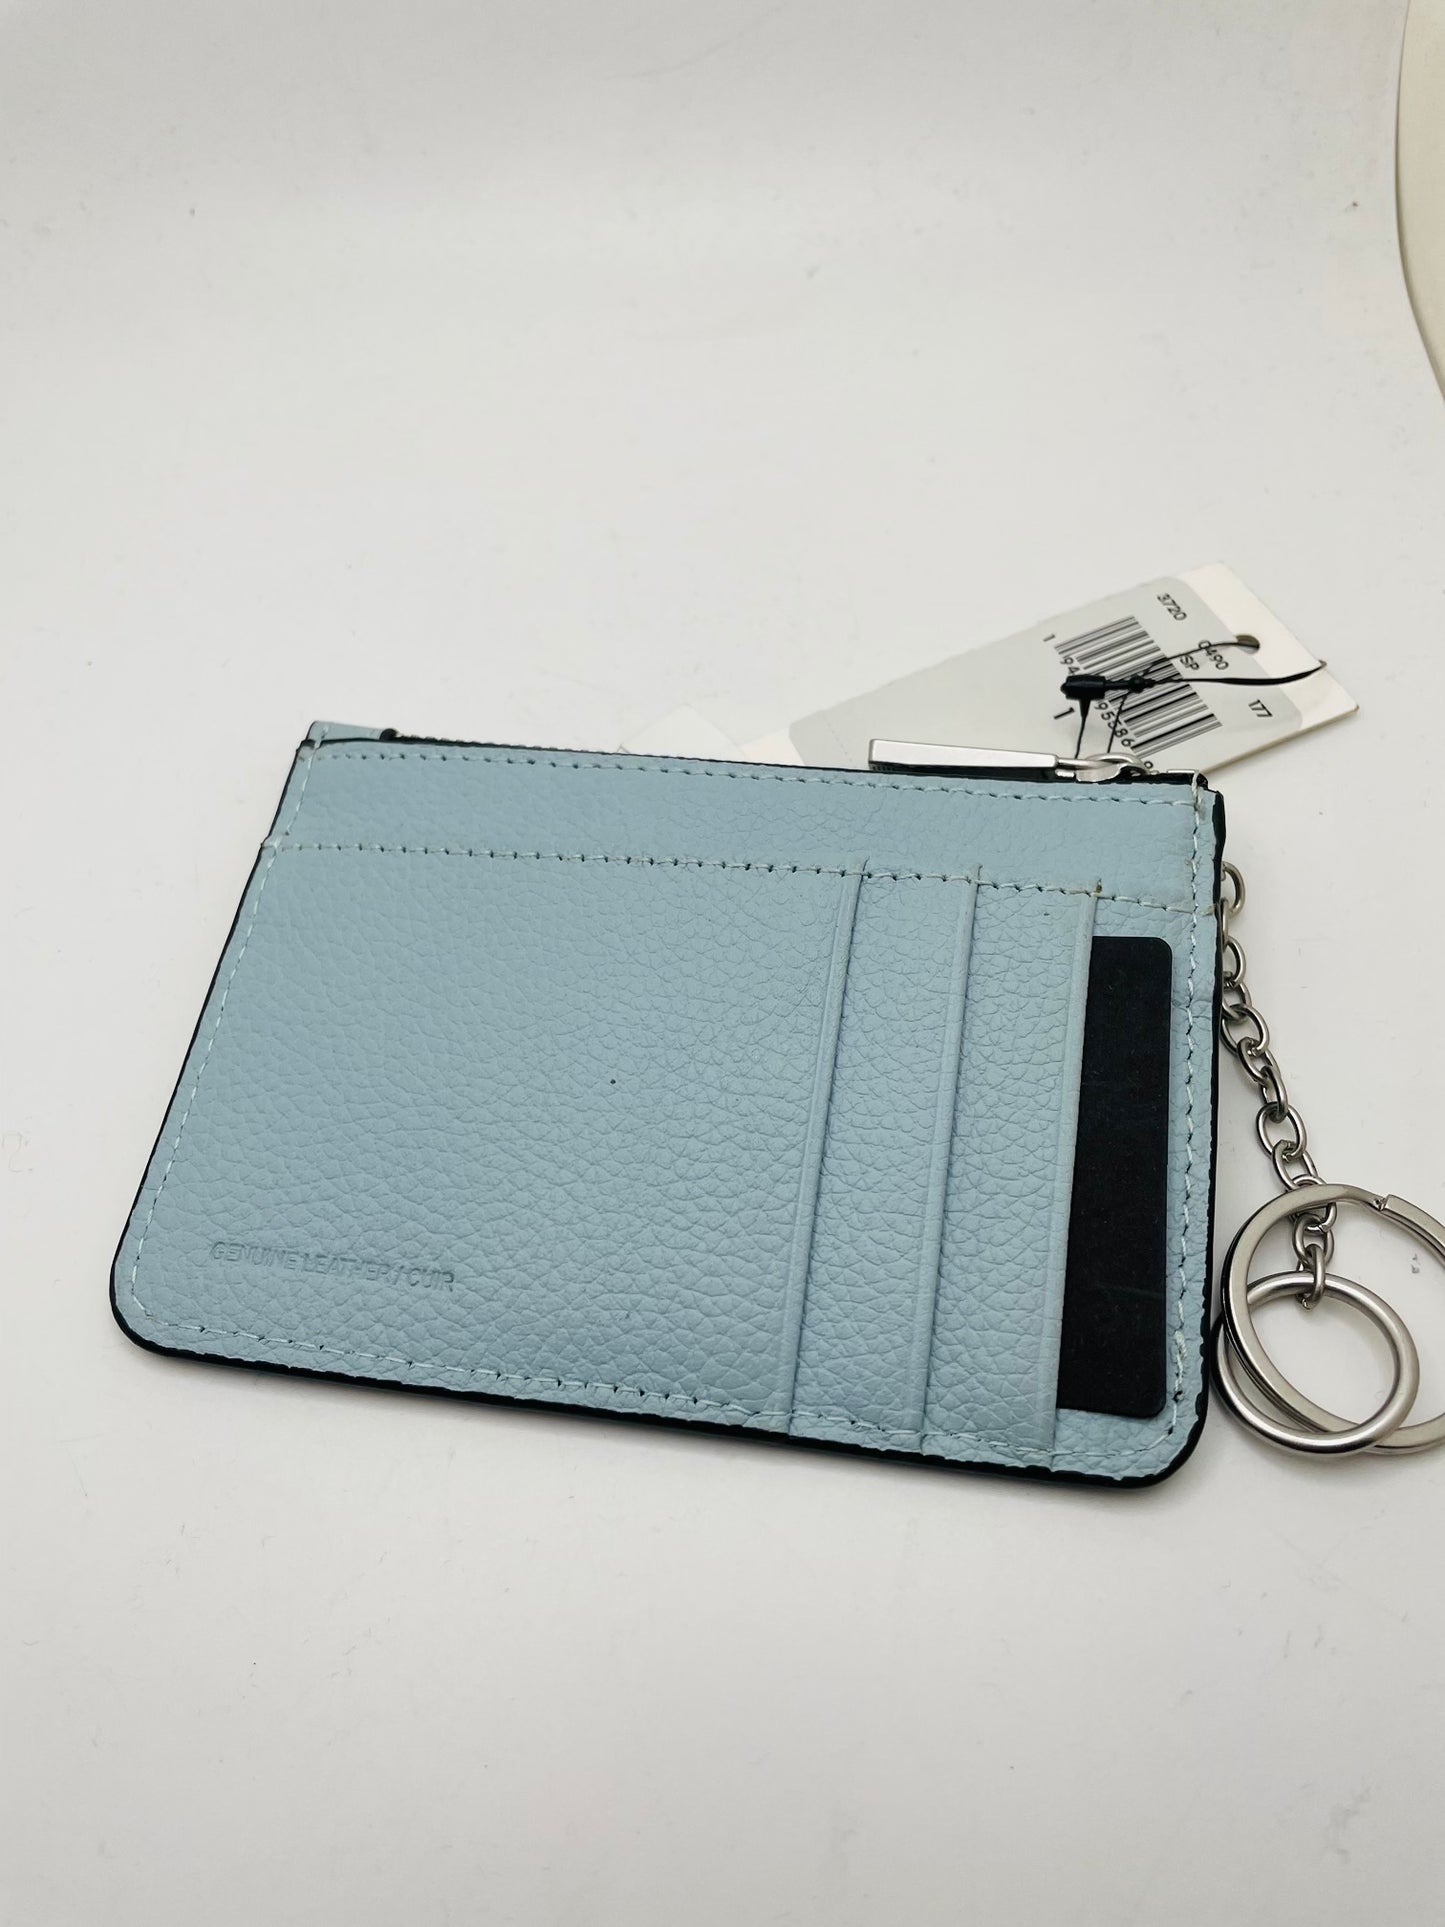 Calvin klein wallet &keychain